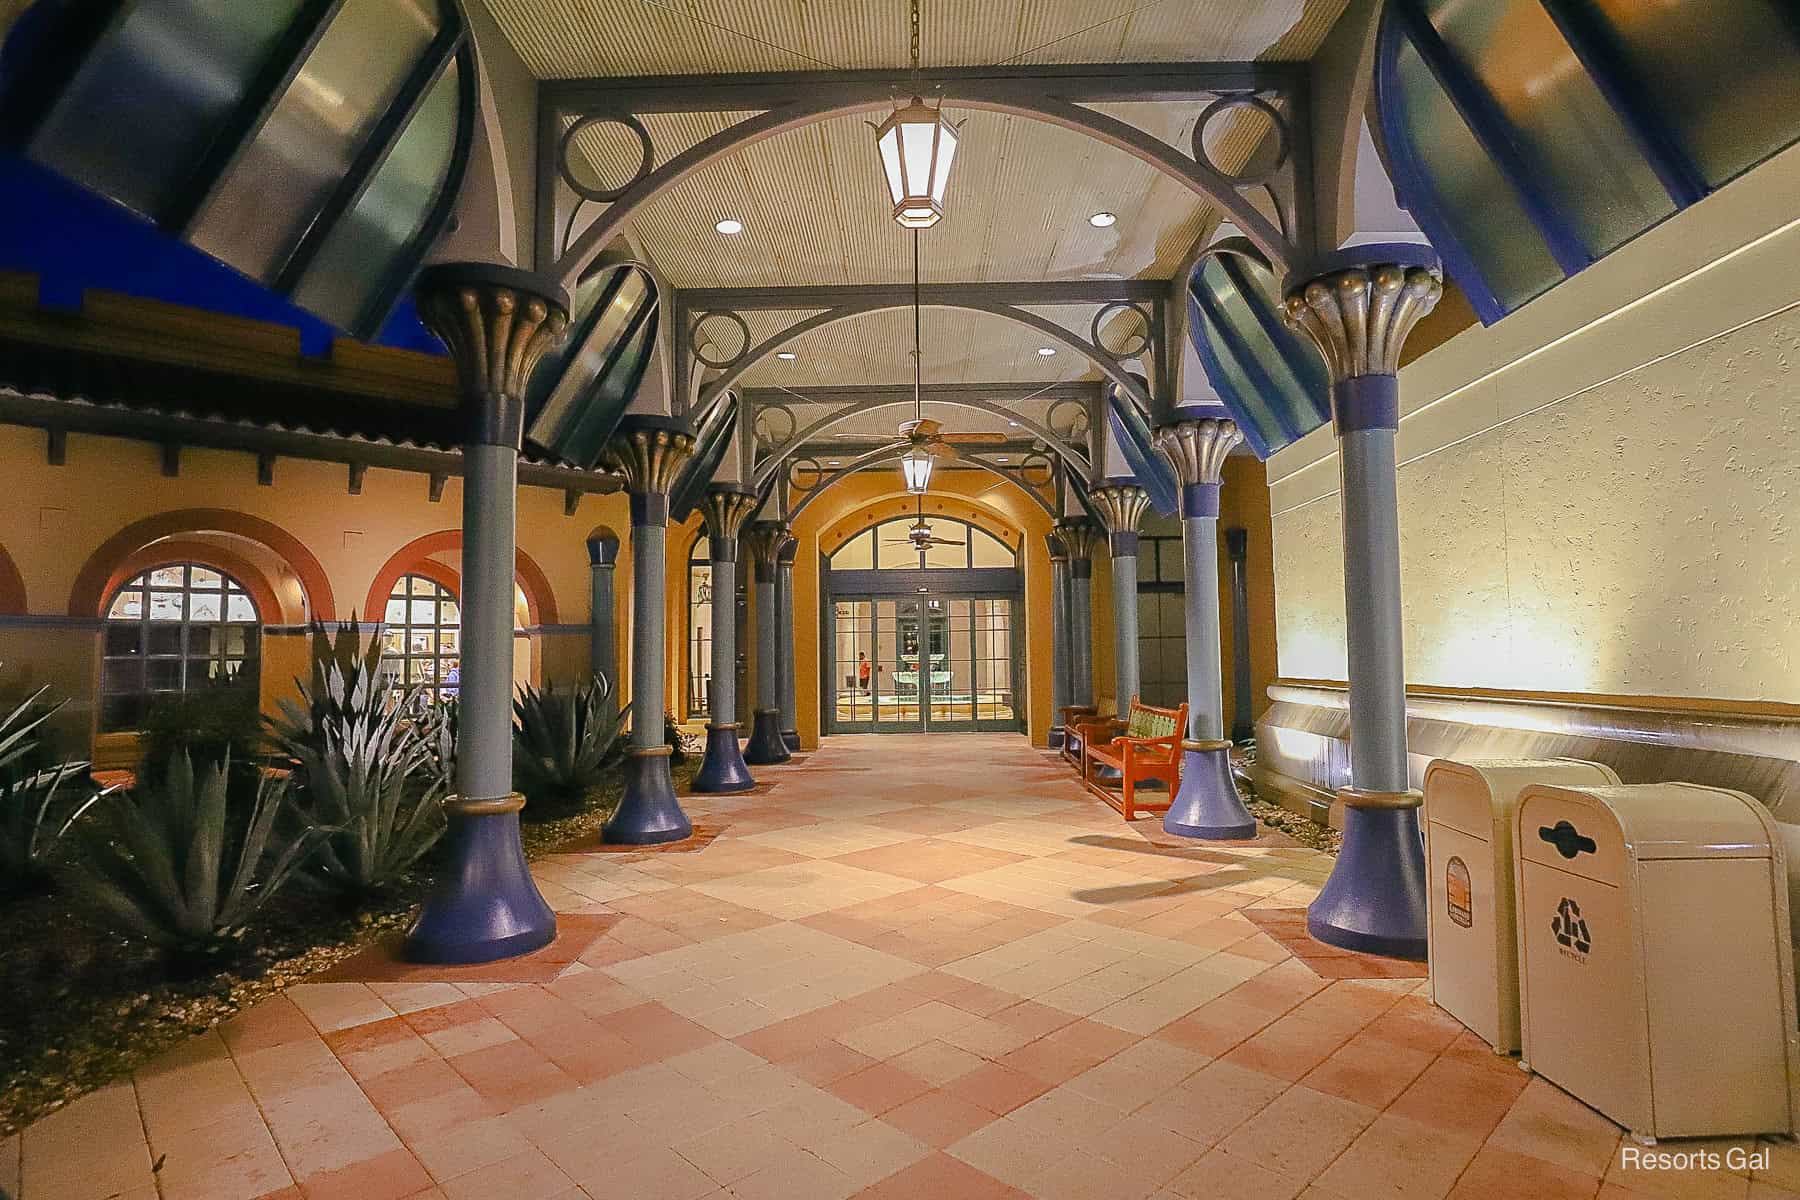 the entrance to Disney's Coronado Springs El Centro area 